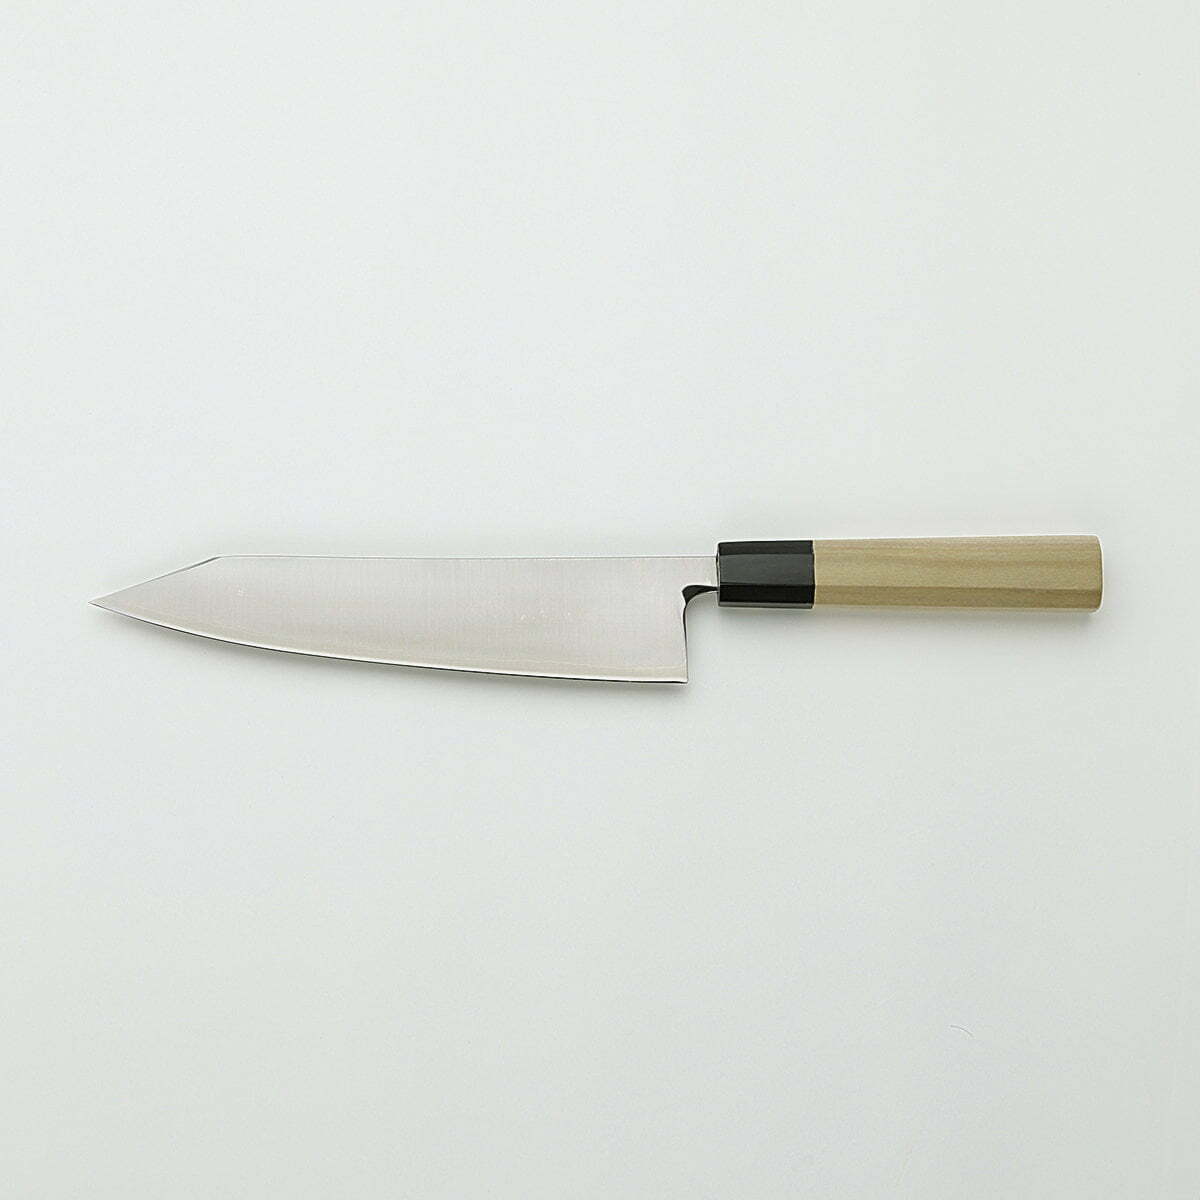 סכין שף רב-תכליתית קִּירִיצוּקֶה גִּיוּטוֹ 210מ״מ מחוזקת 3 שכבות: פלדת פחמן יפנית מתקדמת מסוג R2/SG2 עטופה פלדת אל-חלד גימור מבריק ג׳יקו סאקאיי יפן